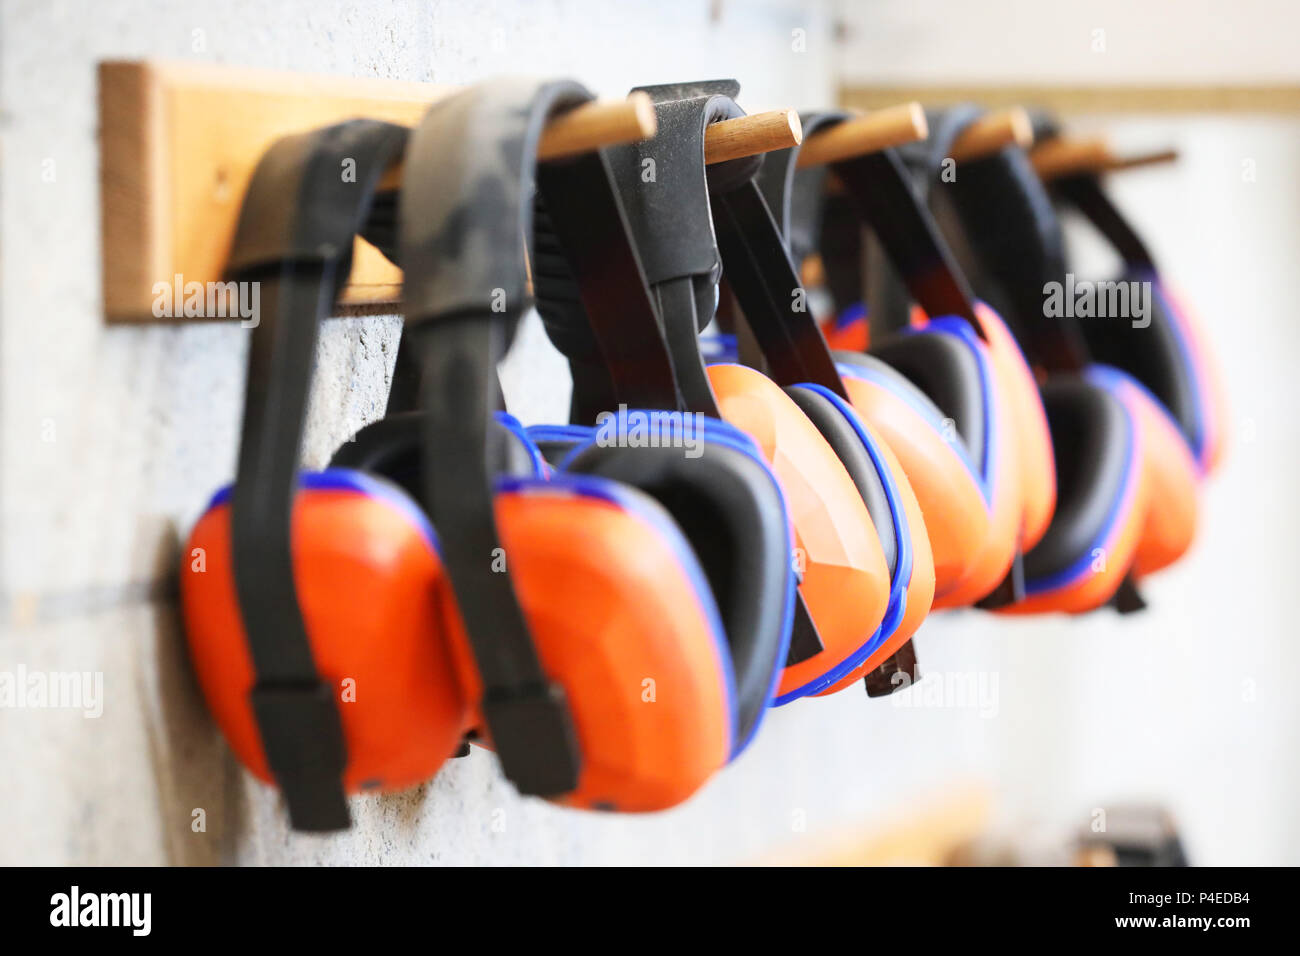 Reihe von orange Gehörschutz Gehörschutz auf einem Baugruppenträger. Gesundheit und Sicherheit am Arbeitsplatz Taubheit Konzept. Sicheres Arbeiten üben. Stockfoto